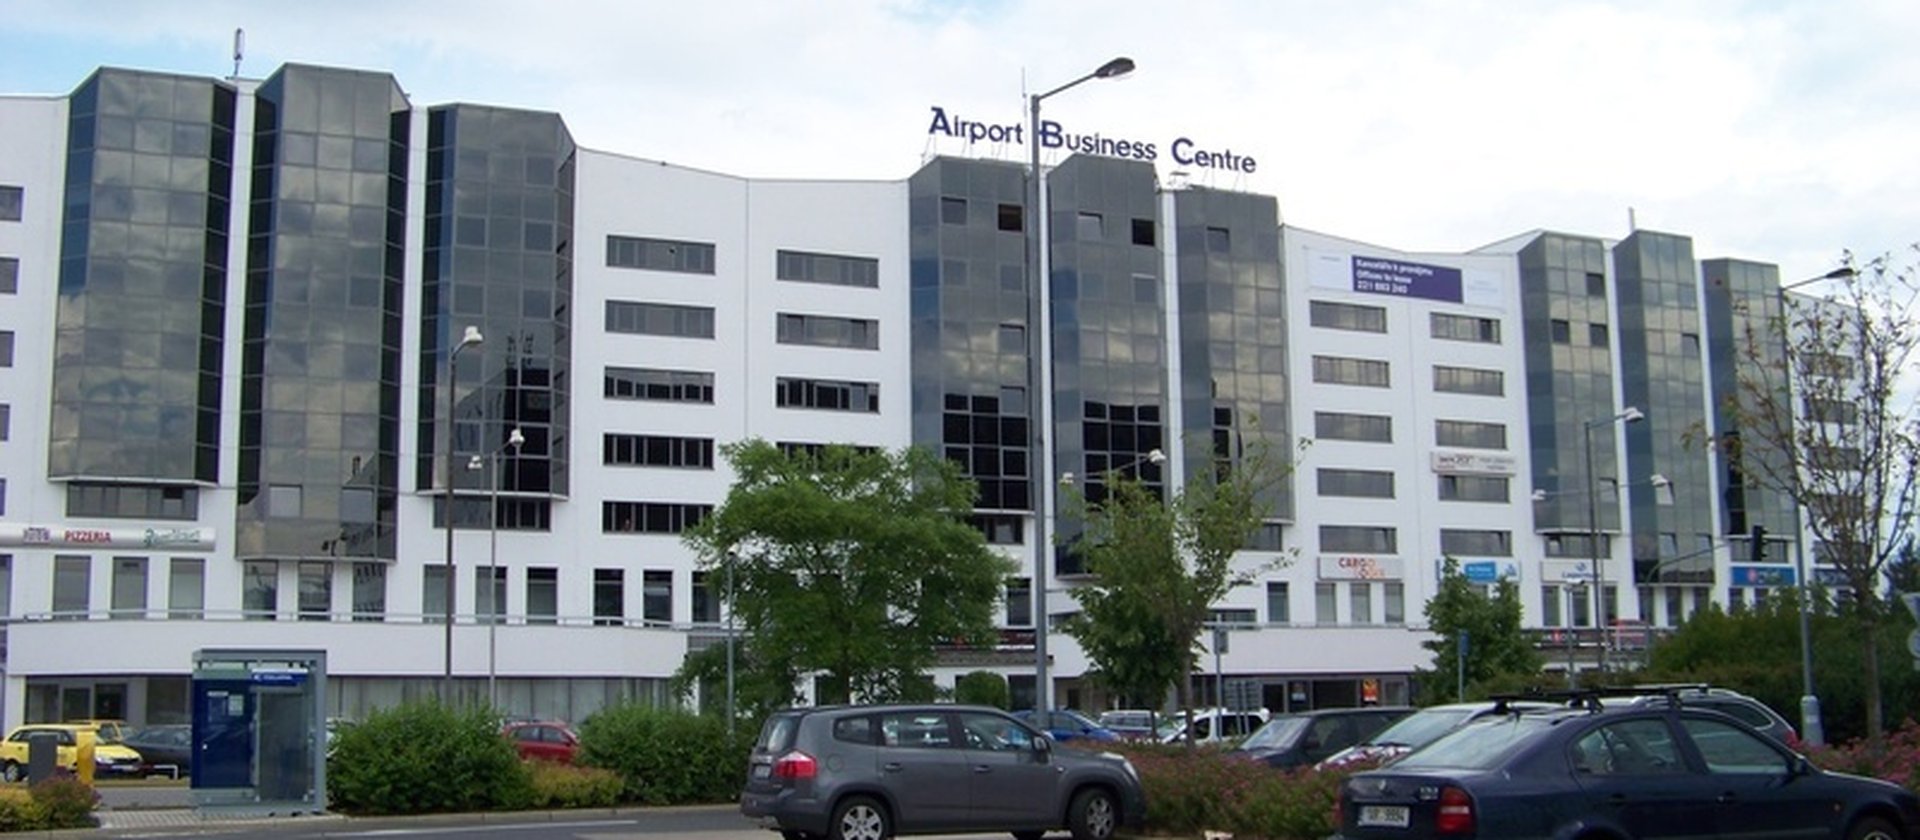 Letiště_Ruzyně,_Airport_Business_Centre